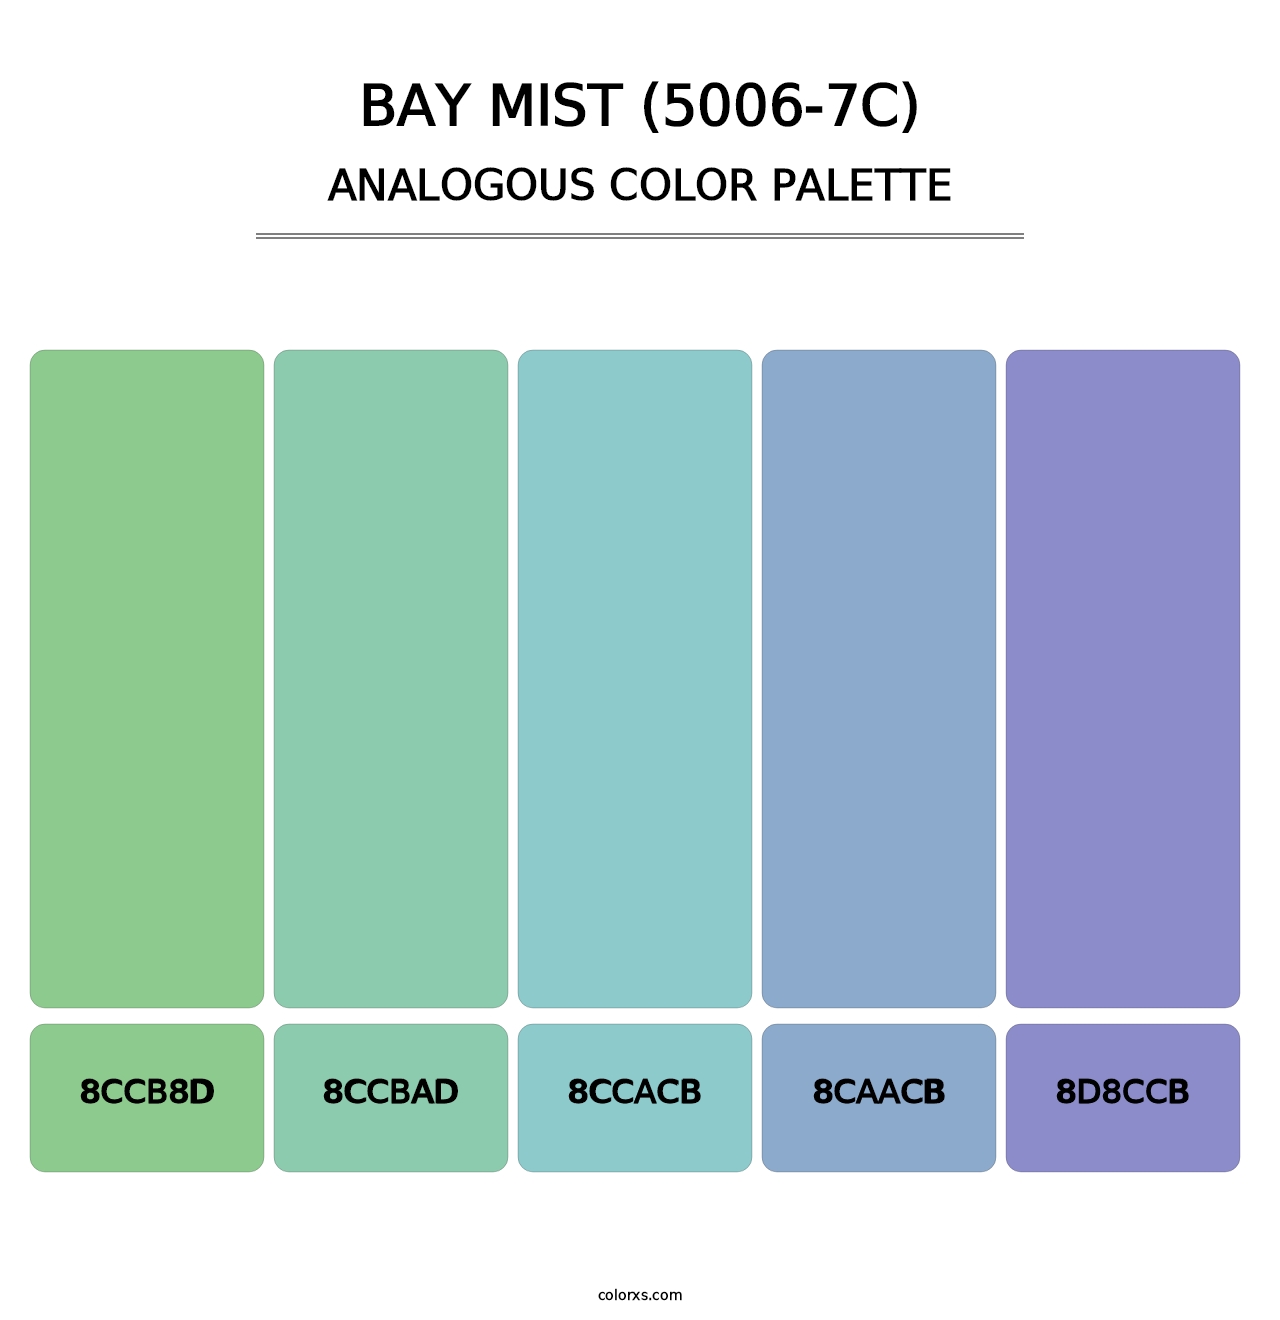 Bay Mist (5006-7C) - Analogous Color Palette